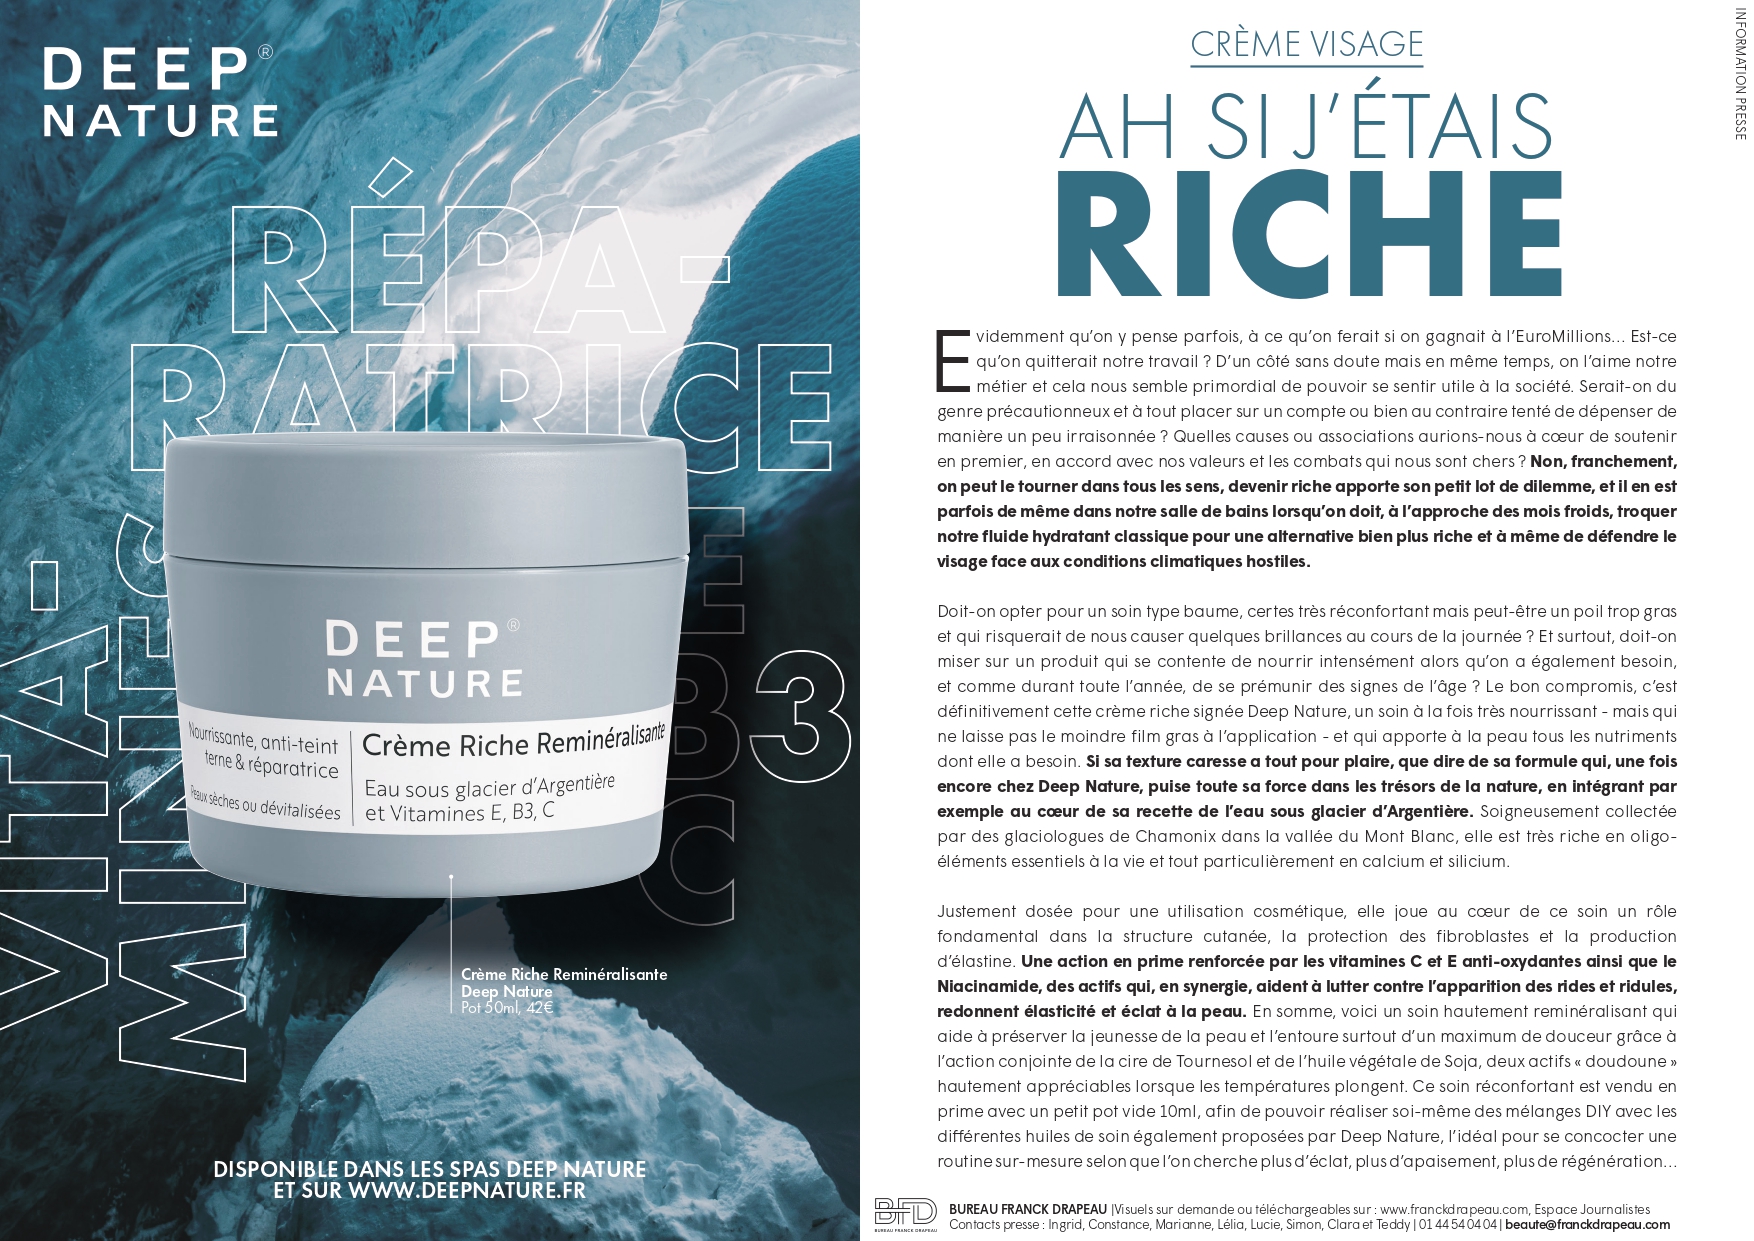 Deep Nature | Crème Riche Visage Reminéralisante